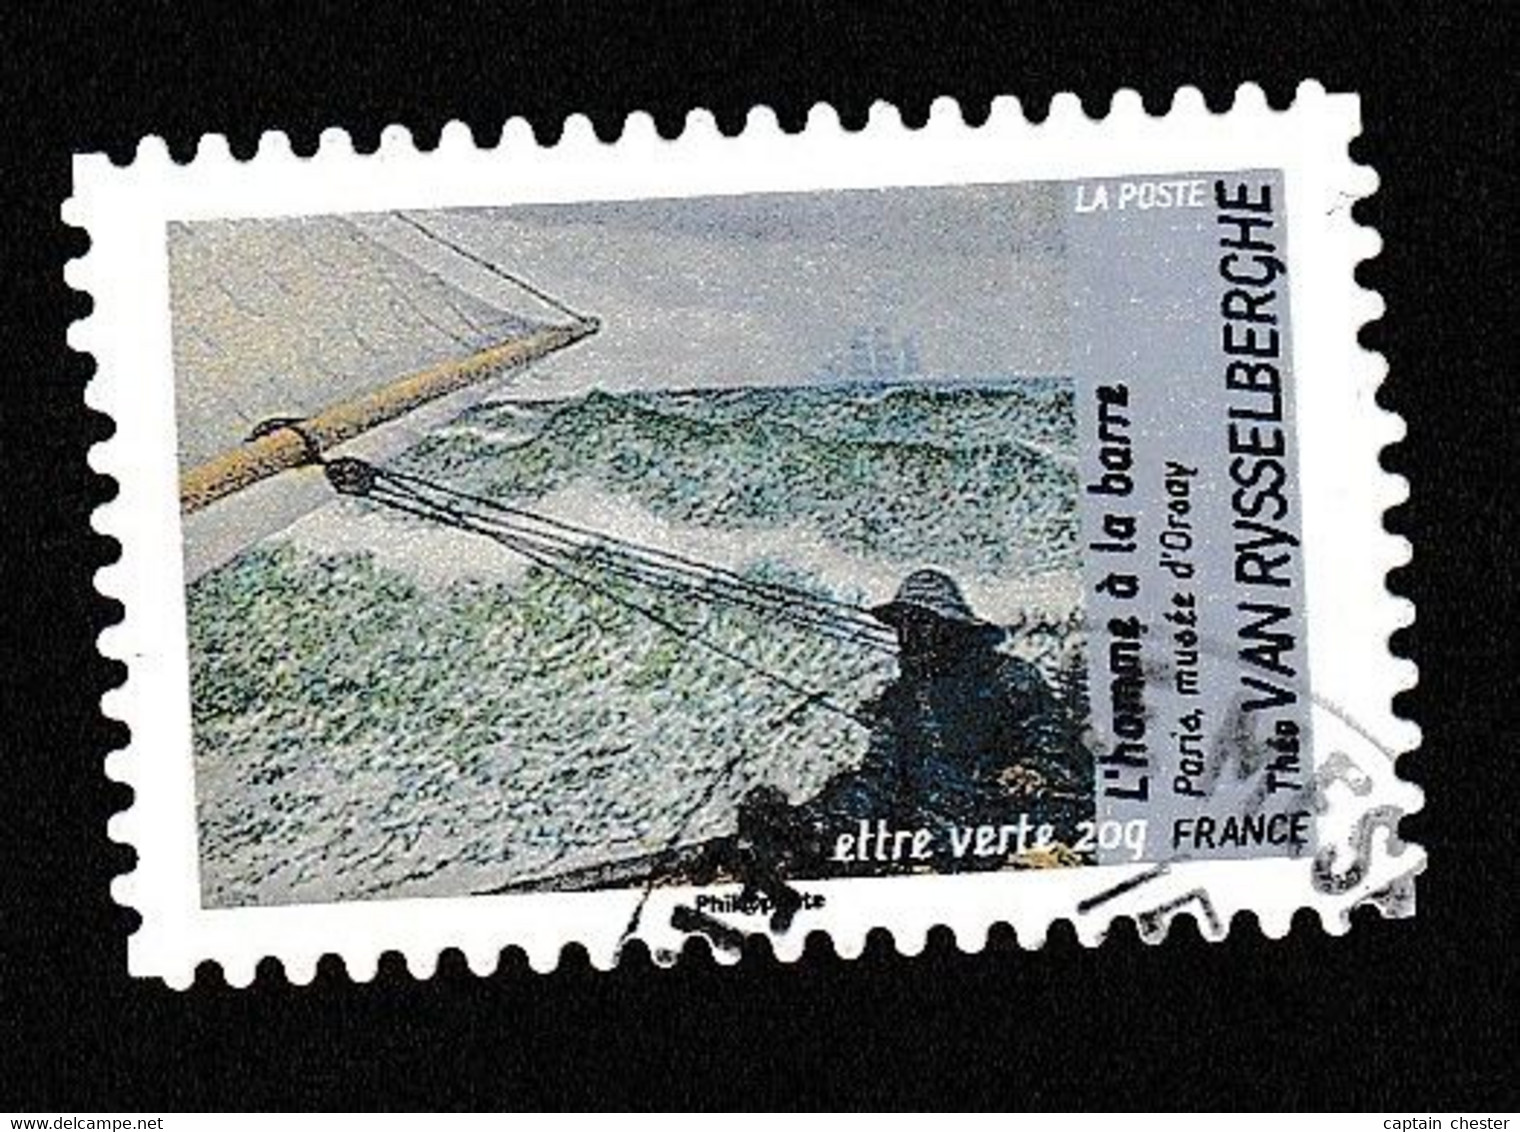 IMPRESSIONNISTES VAN RYSSELBERGHE - Autoadhésif N° 832 De 2013 - TRES BELLE VARIETE DE PIQUAGE - Used Stamps